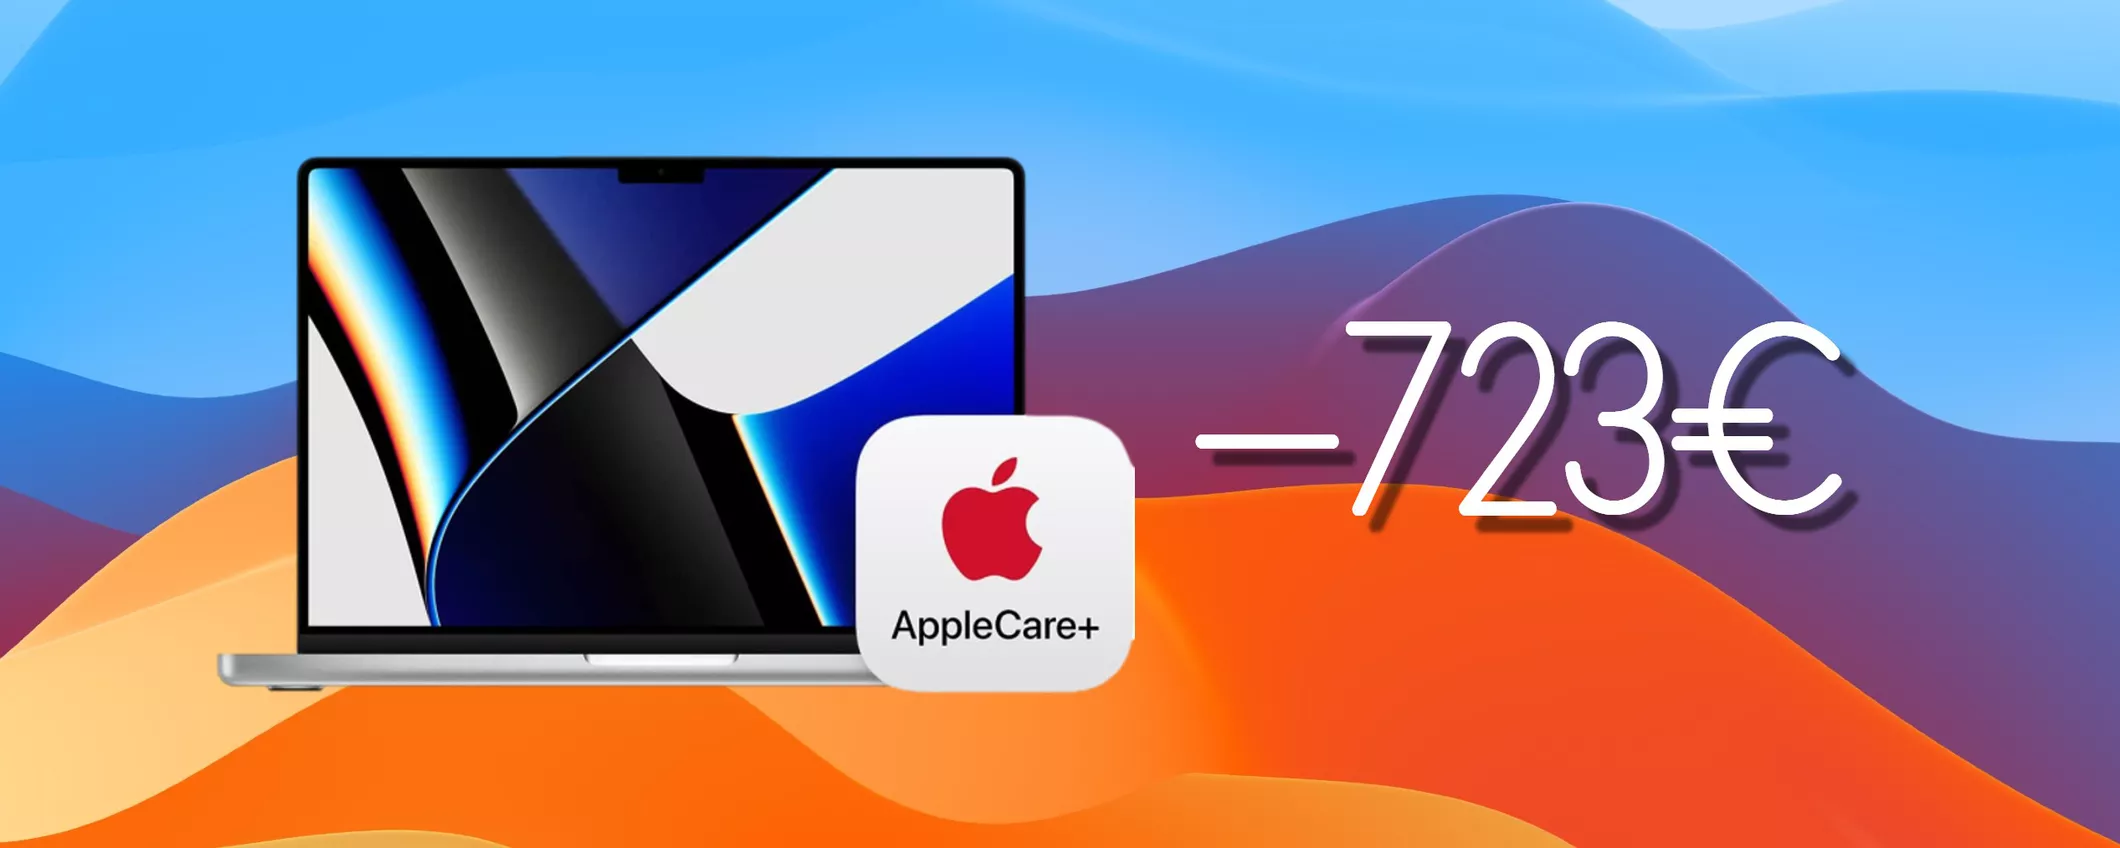 MacBook Pro 2021 con M1 Pro, FOLLIA su Amazon: SCONTO di oltre 720 euro (AppleCare+ inclusa)